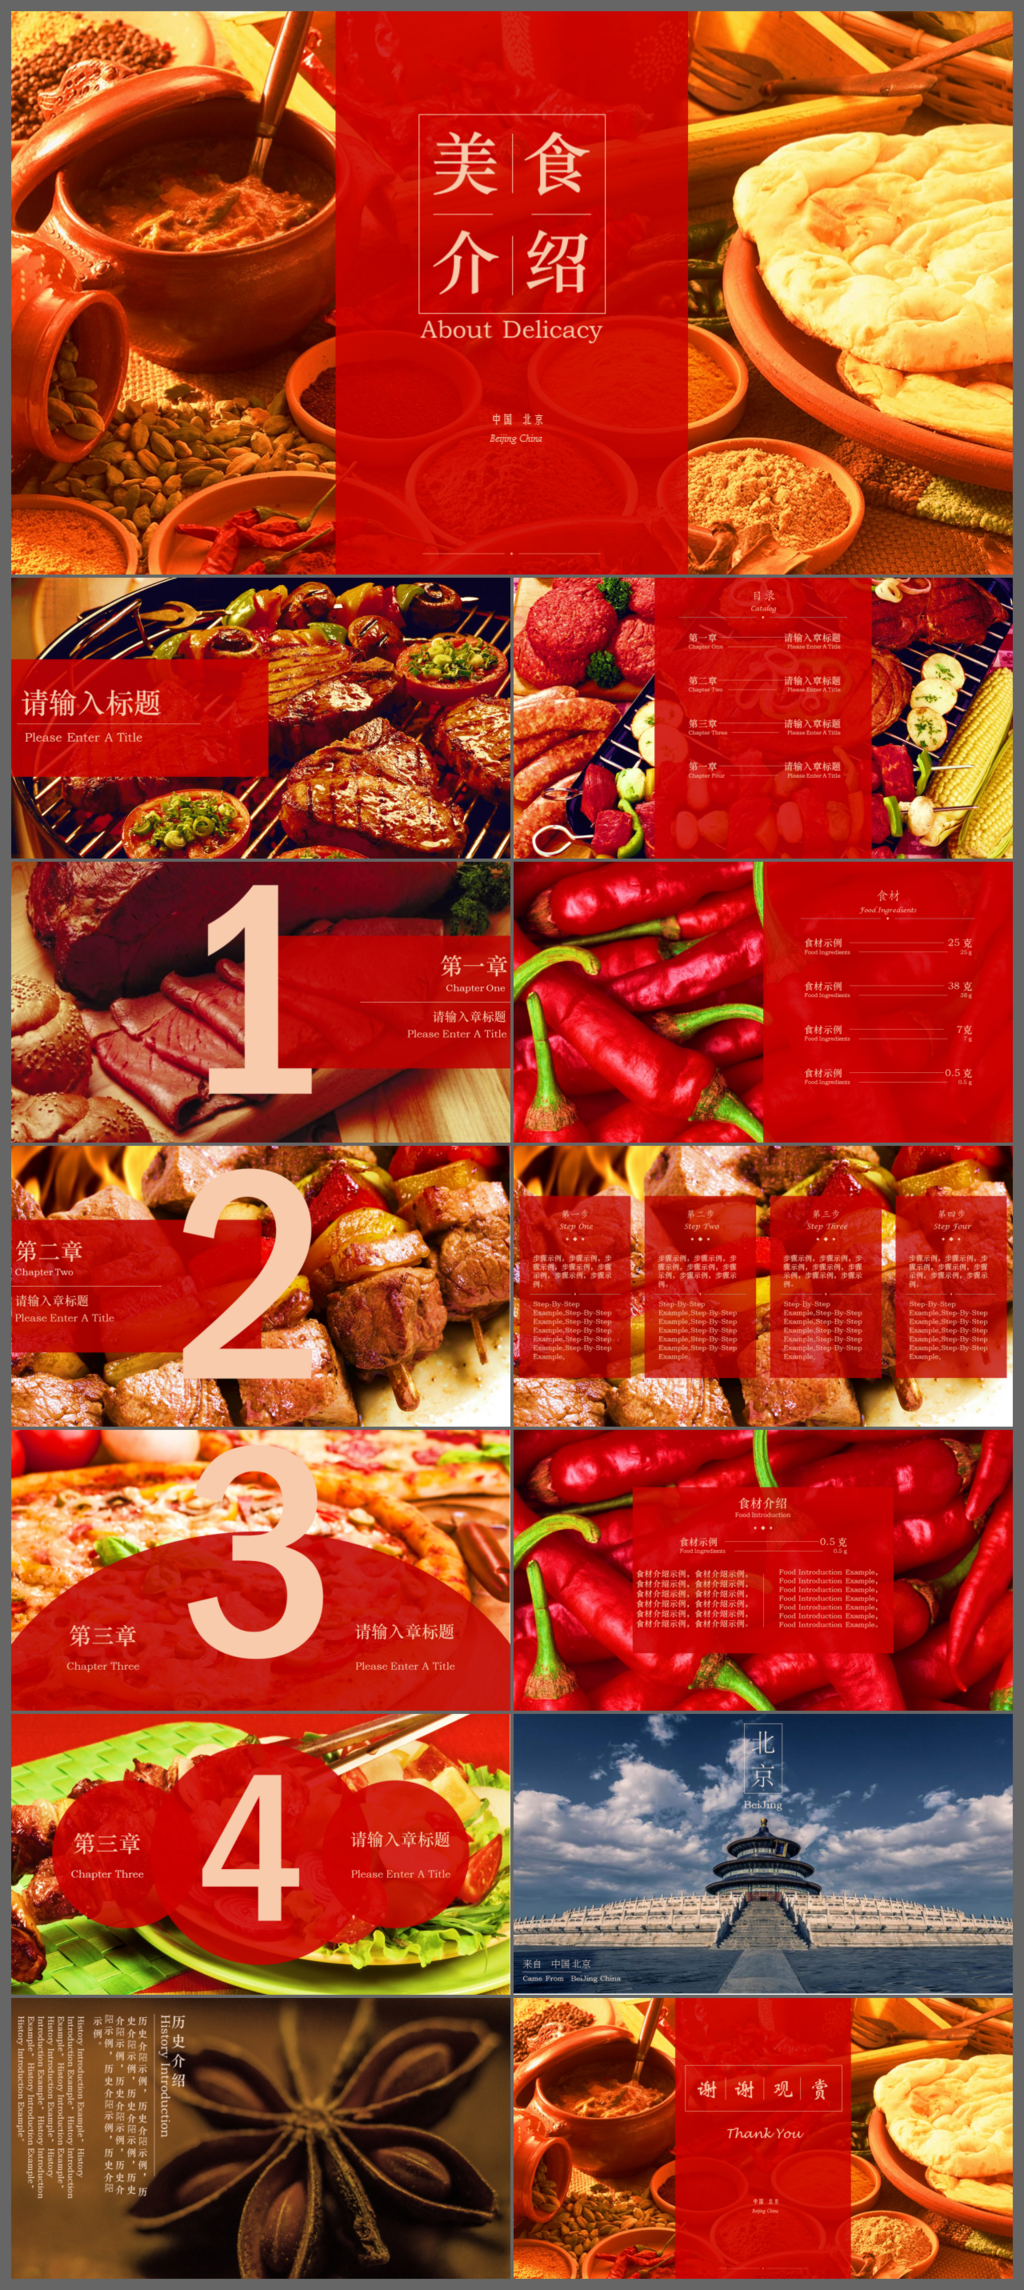 高档餐饮美食介绍中餐厅介绍PPT模板图片下载